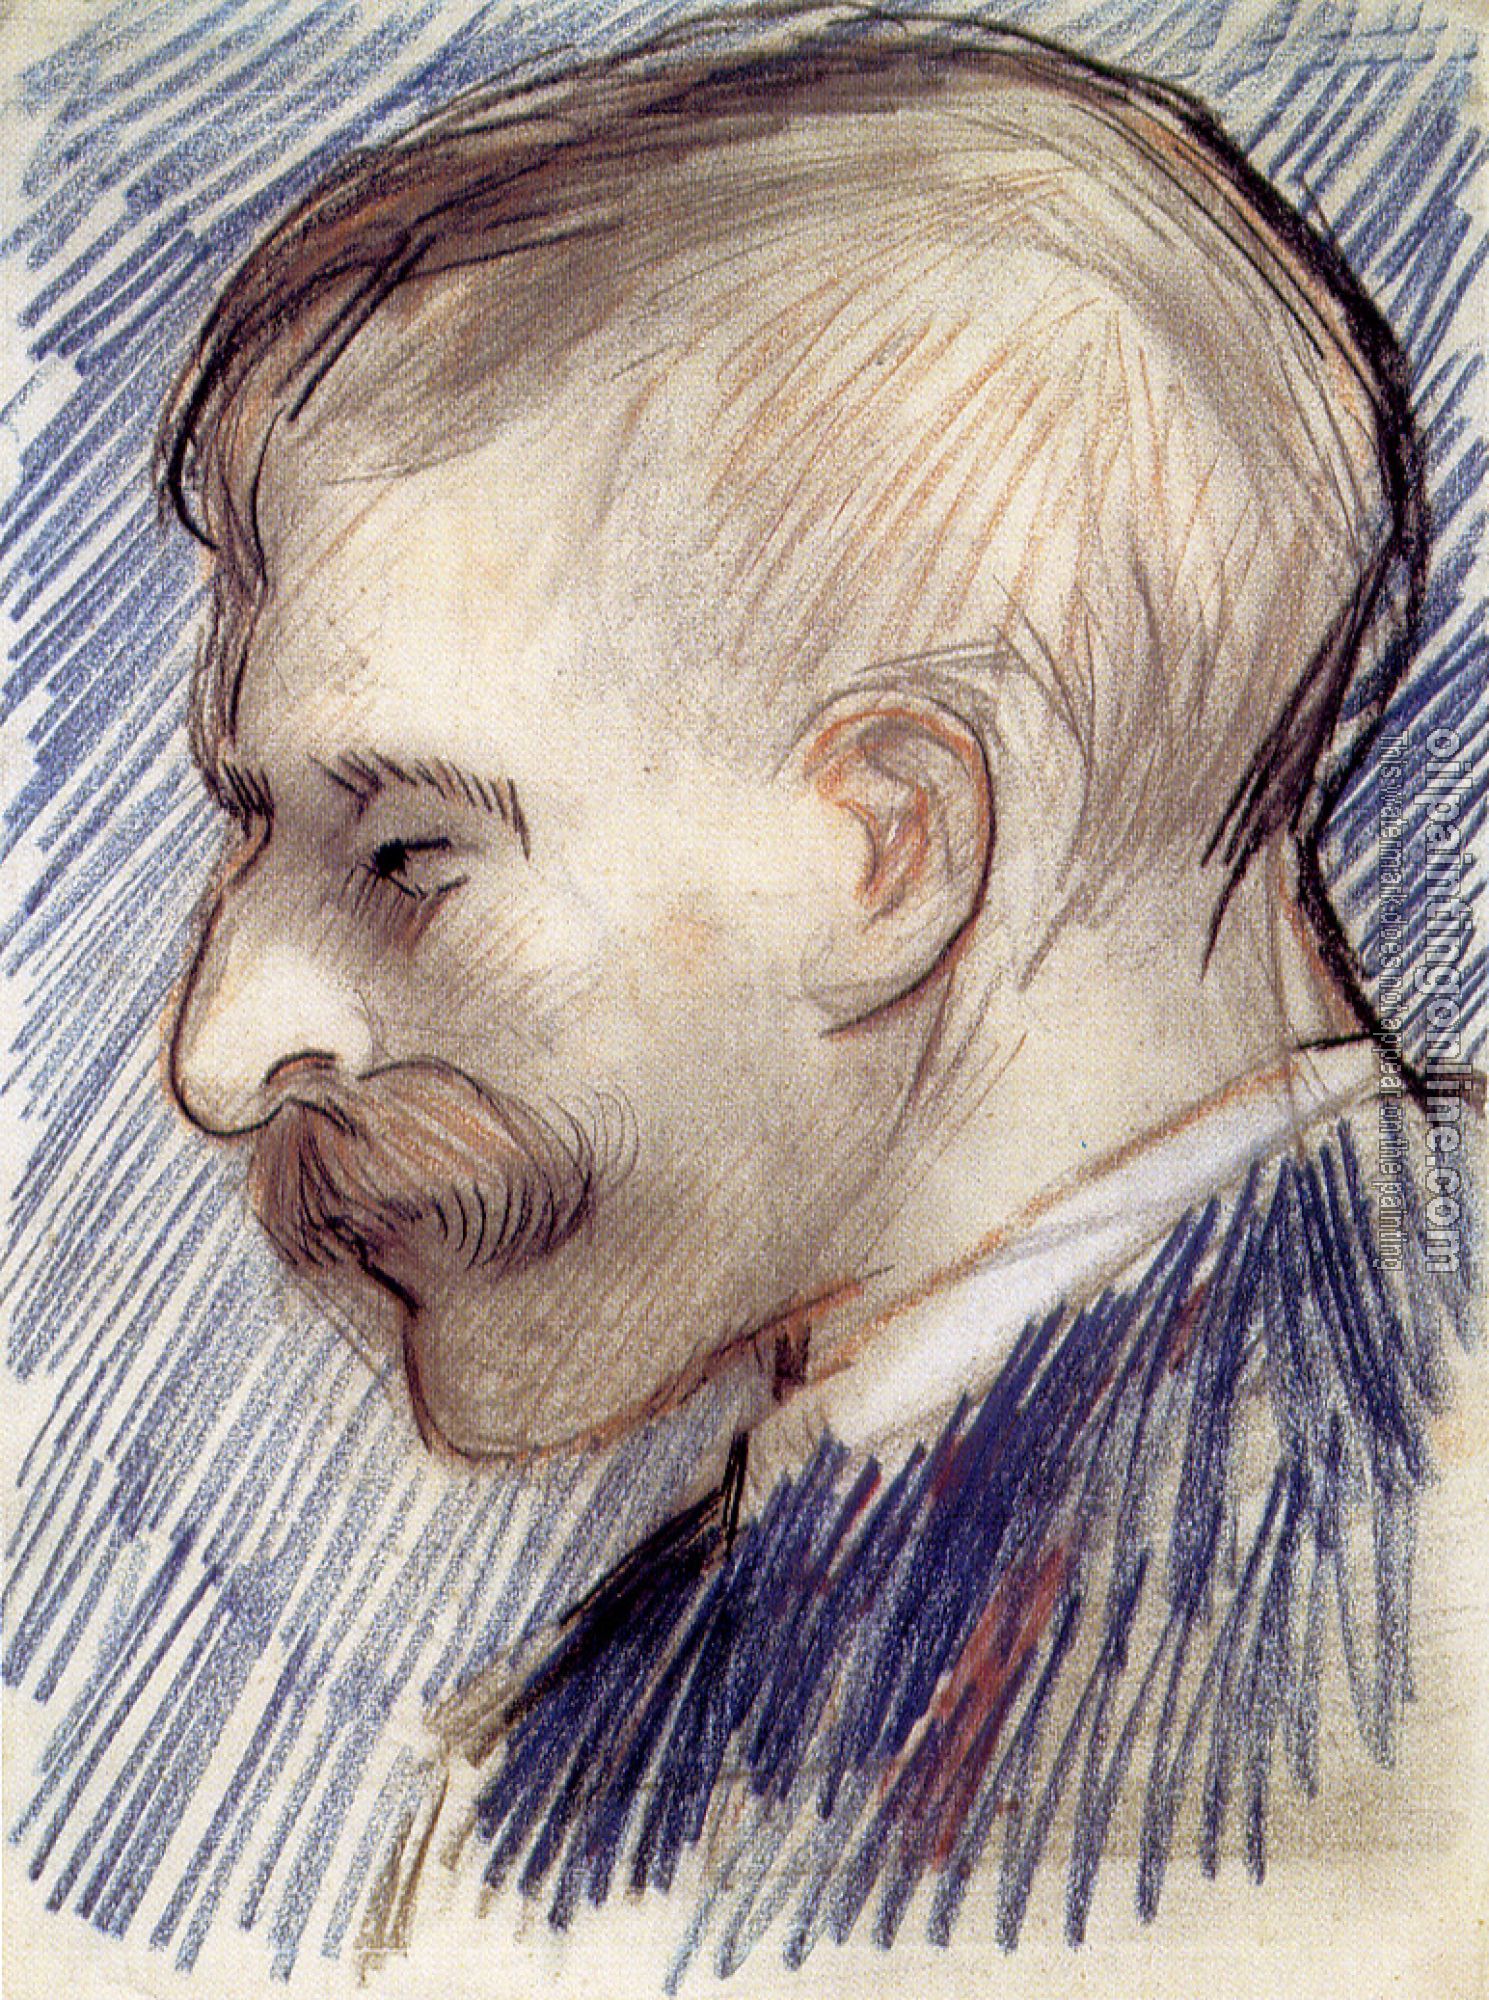 Gogh, Vincent van - Head of a Man,Probably a Portrait of Theo van Gogh